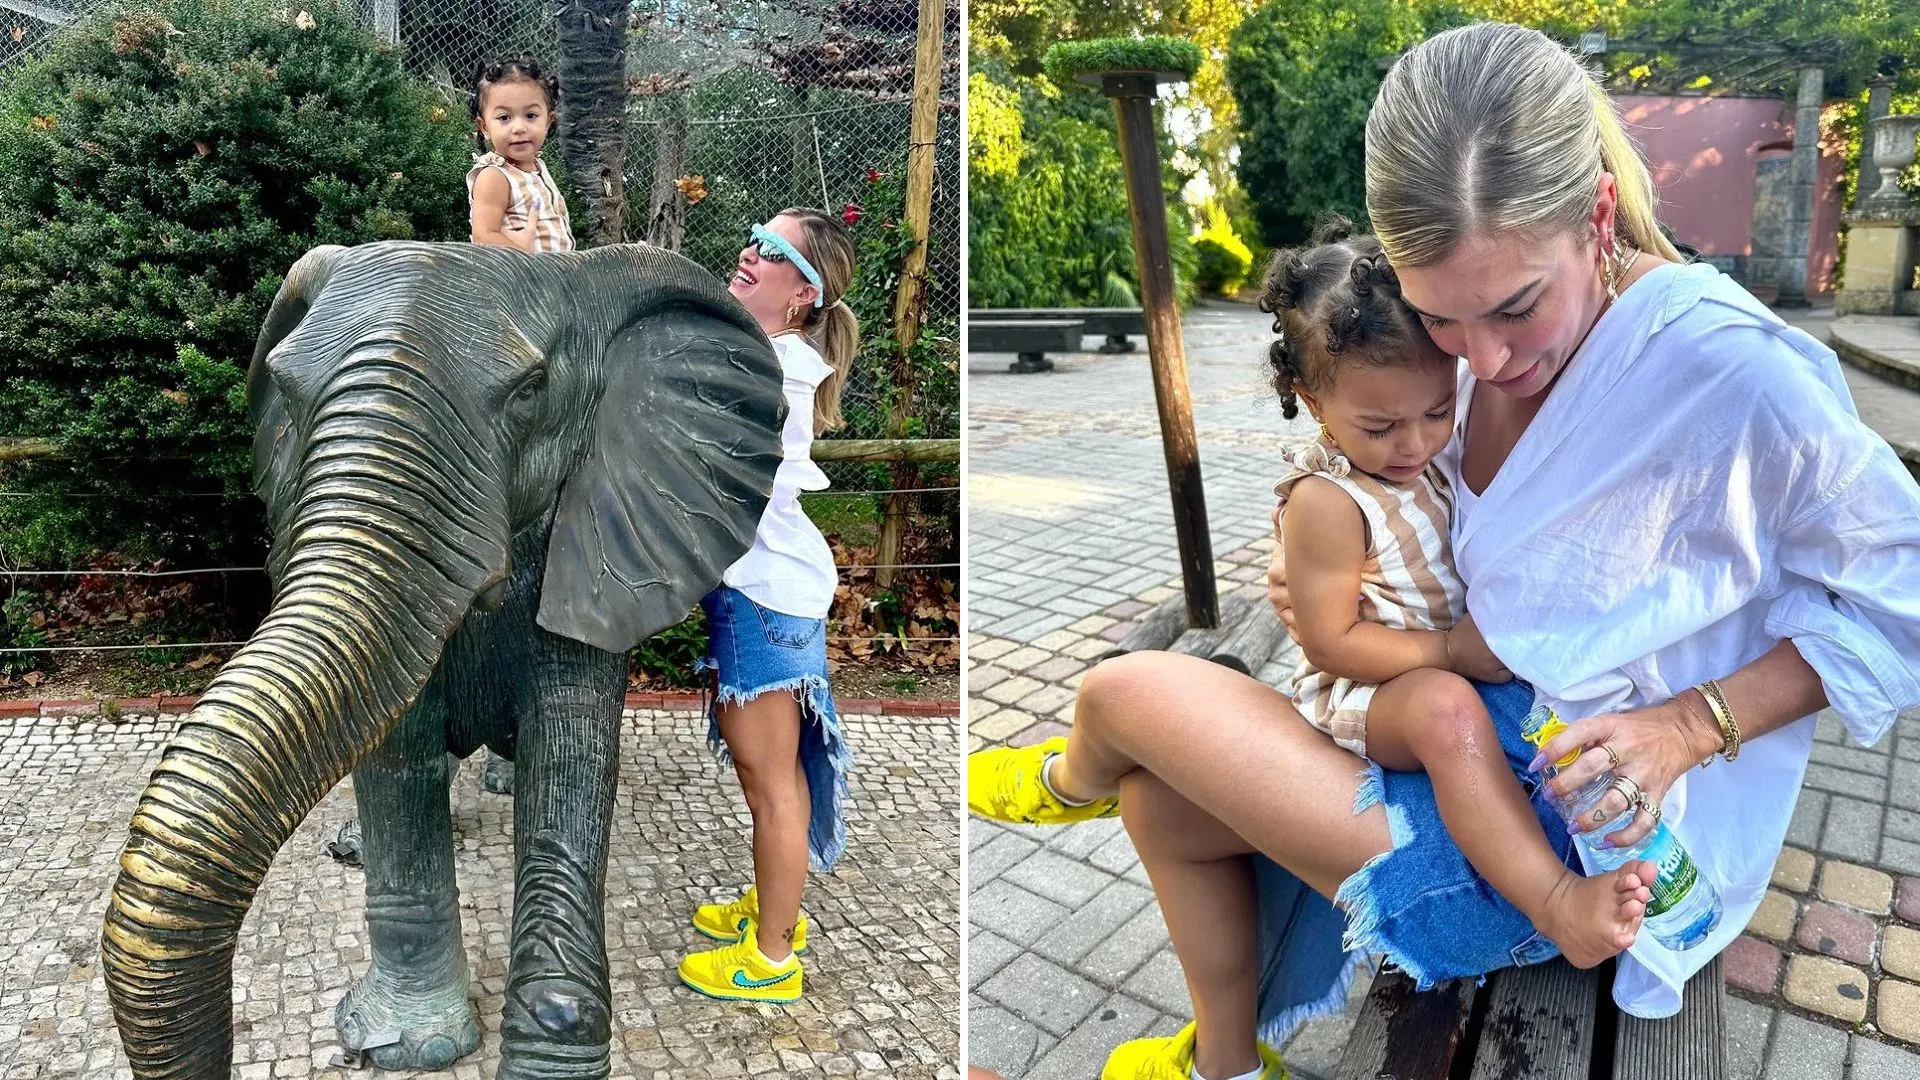 Liz visitou um zoológico em Portugal